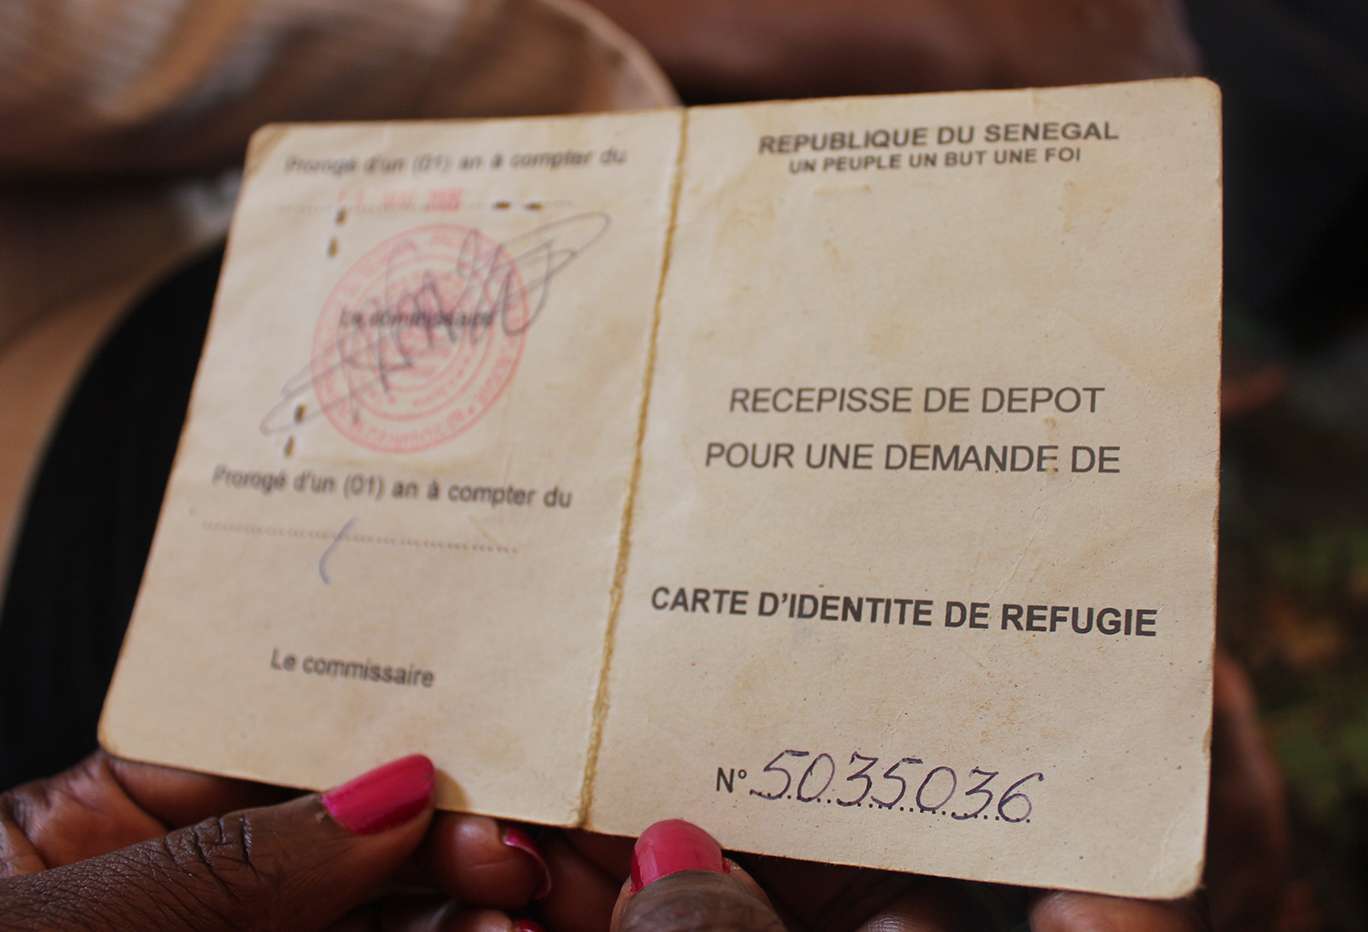 Pour cet ancien porte-parole de la présidence " les réfugiés mauritaniens souffrent toujours "